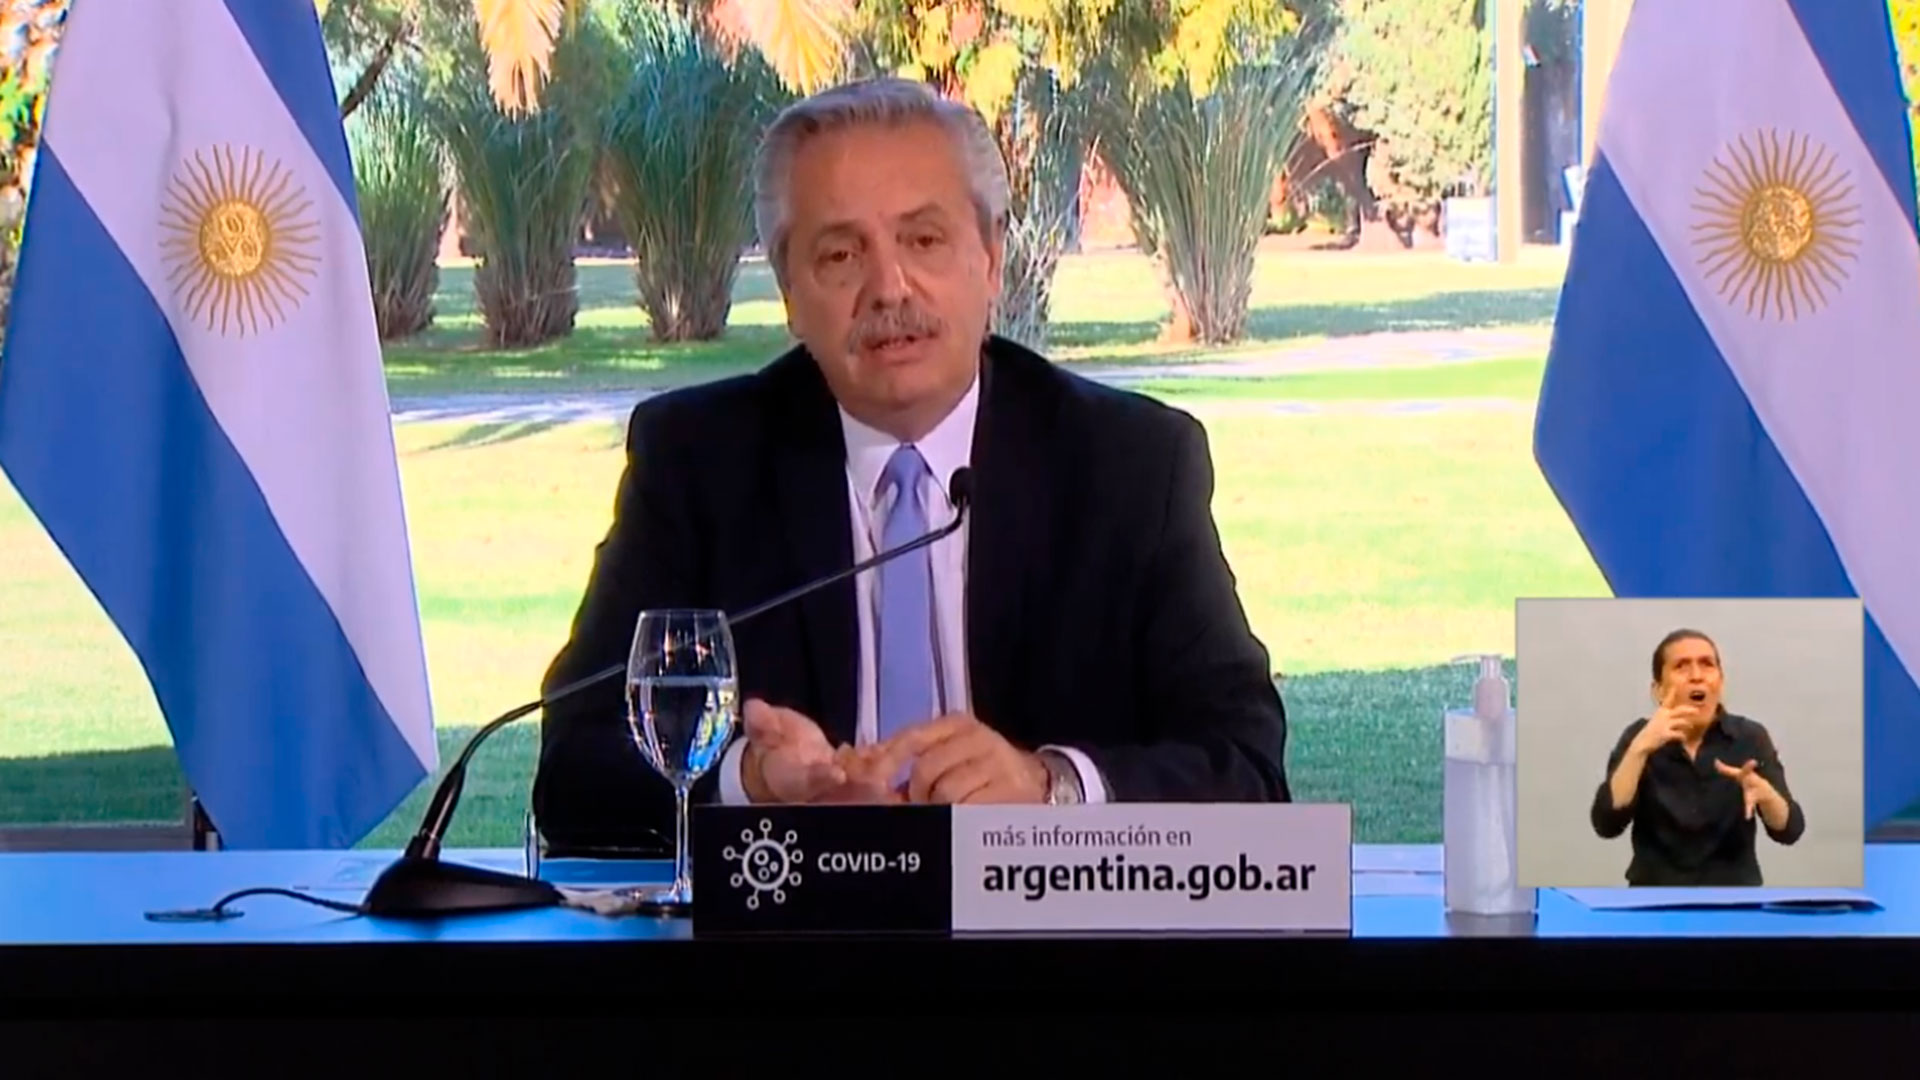 El presidente Fernández encabezó el anuncio en el que se extendió la cuarentena hasta el próximo 17 de julio